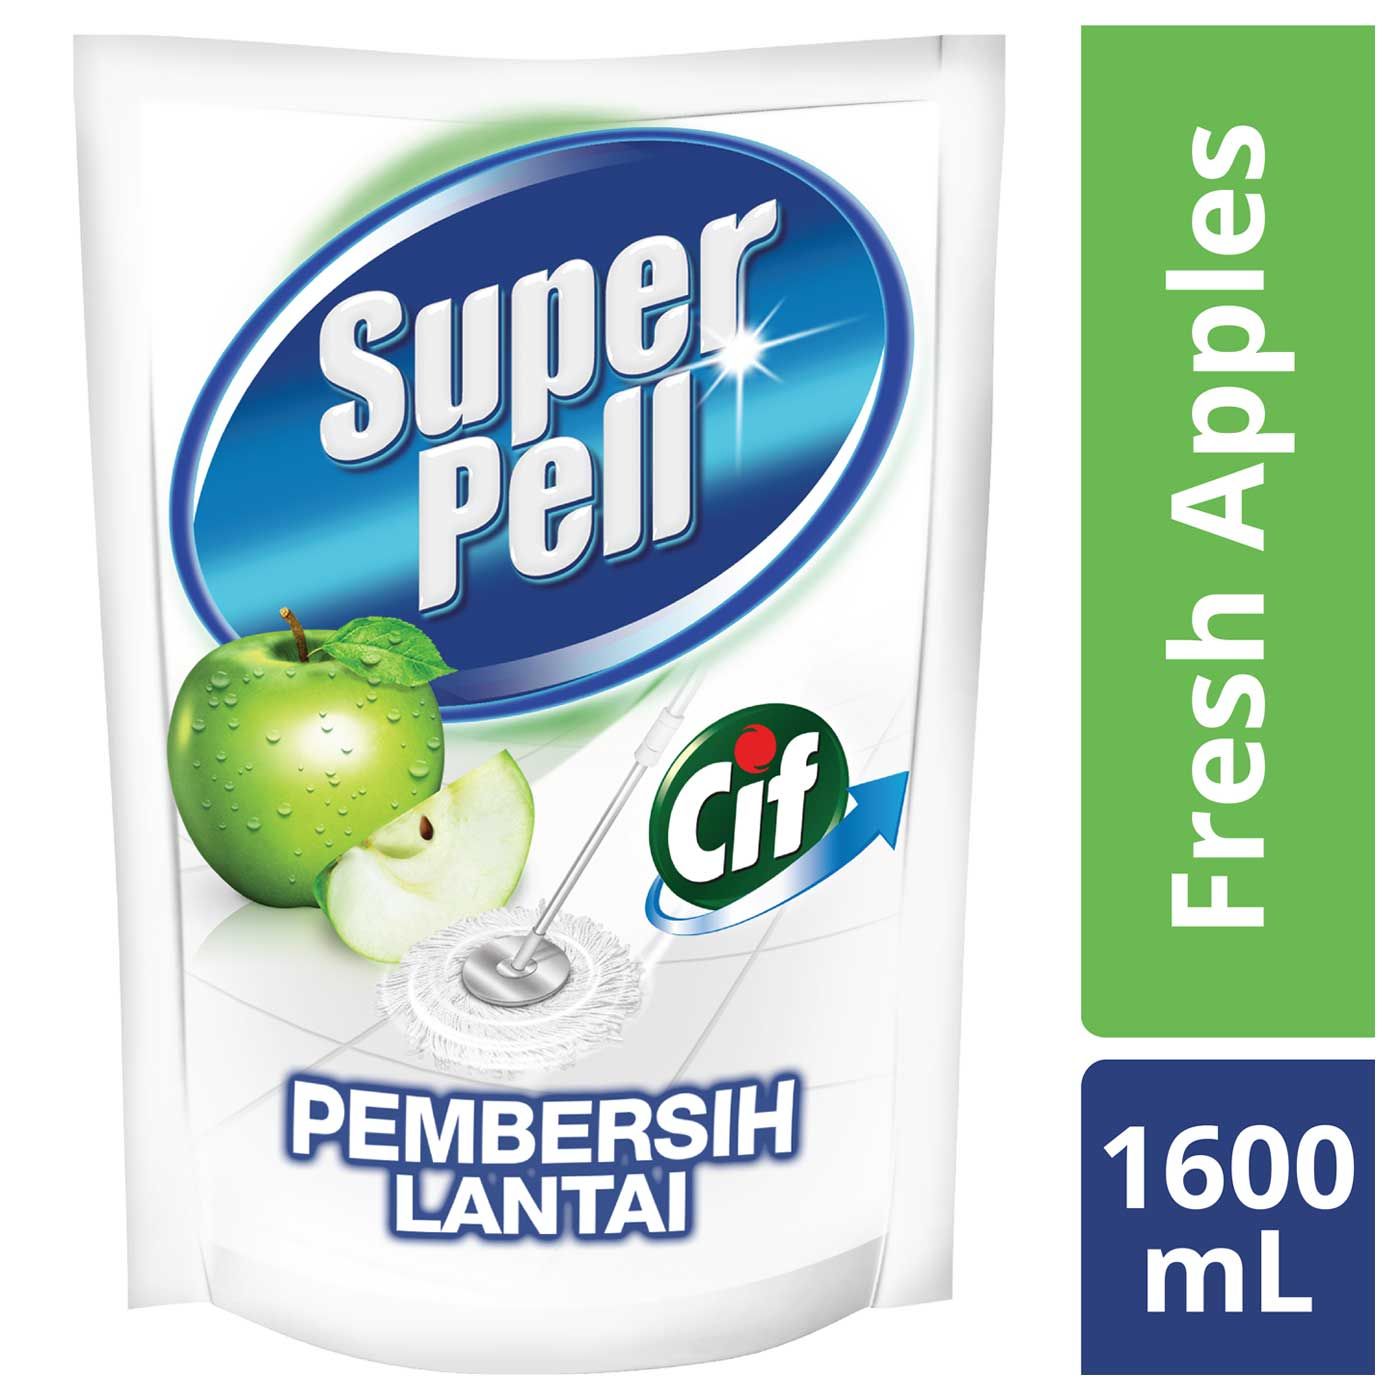 Super Pell Lantai Green Pch (1600ml) - 1